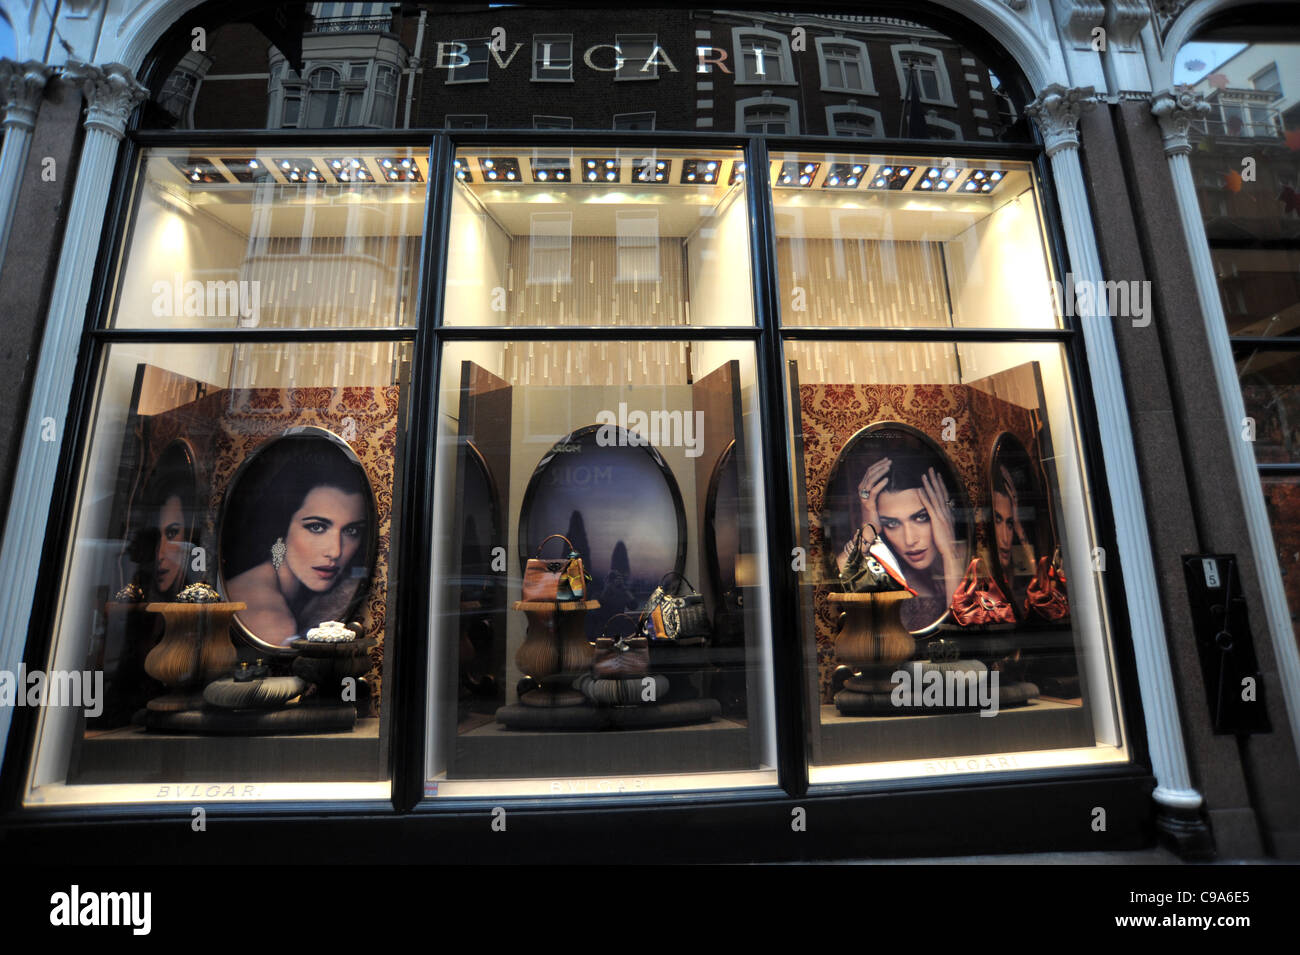 Photo de l'extérieur du magasin Bvlgari sur Bond Street à Londres Angleterre 2011 - Image Pruchnie Auteur Ben 2011 Banque D'Images